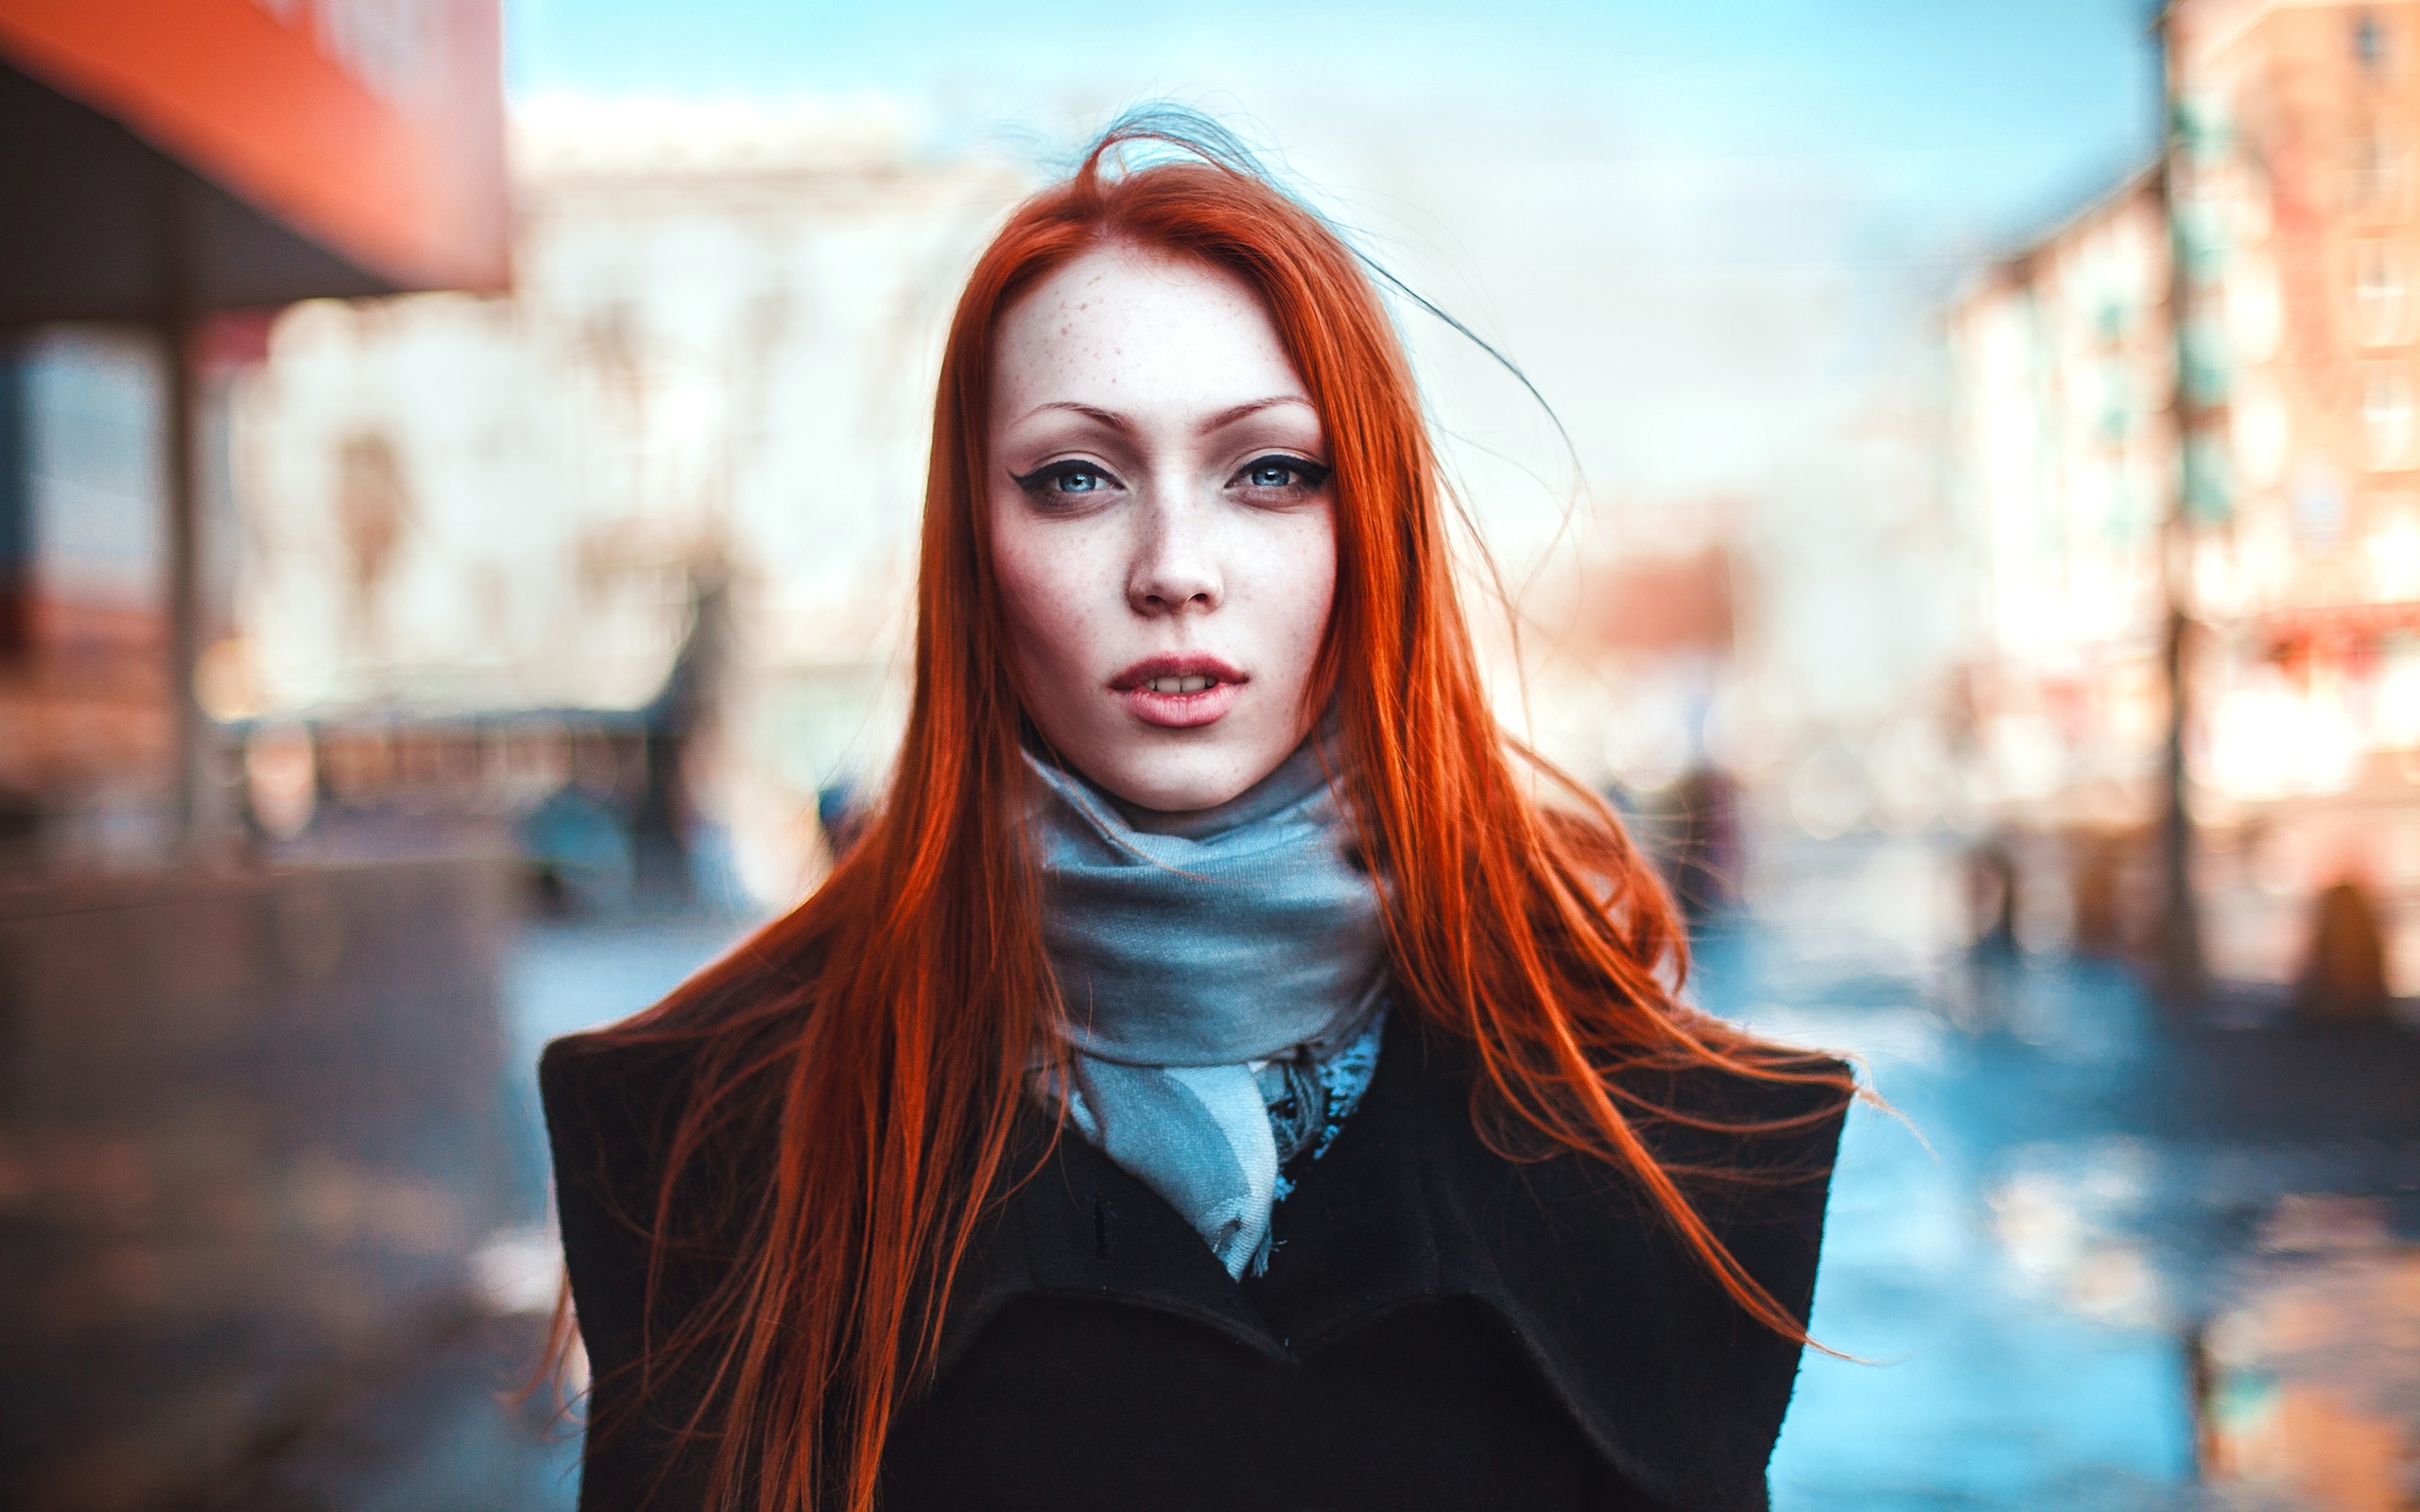 Wallpapers redhead model portrait on the desktop